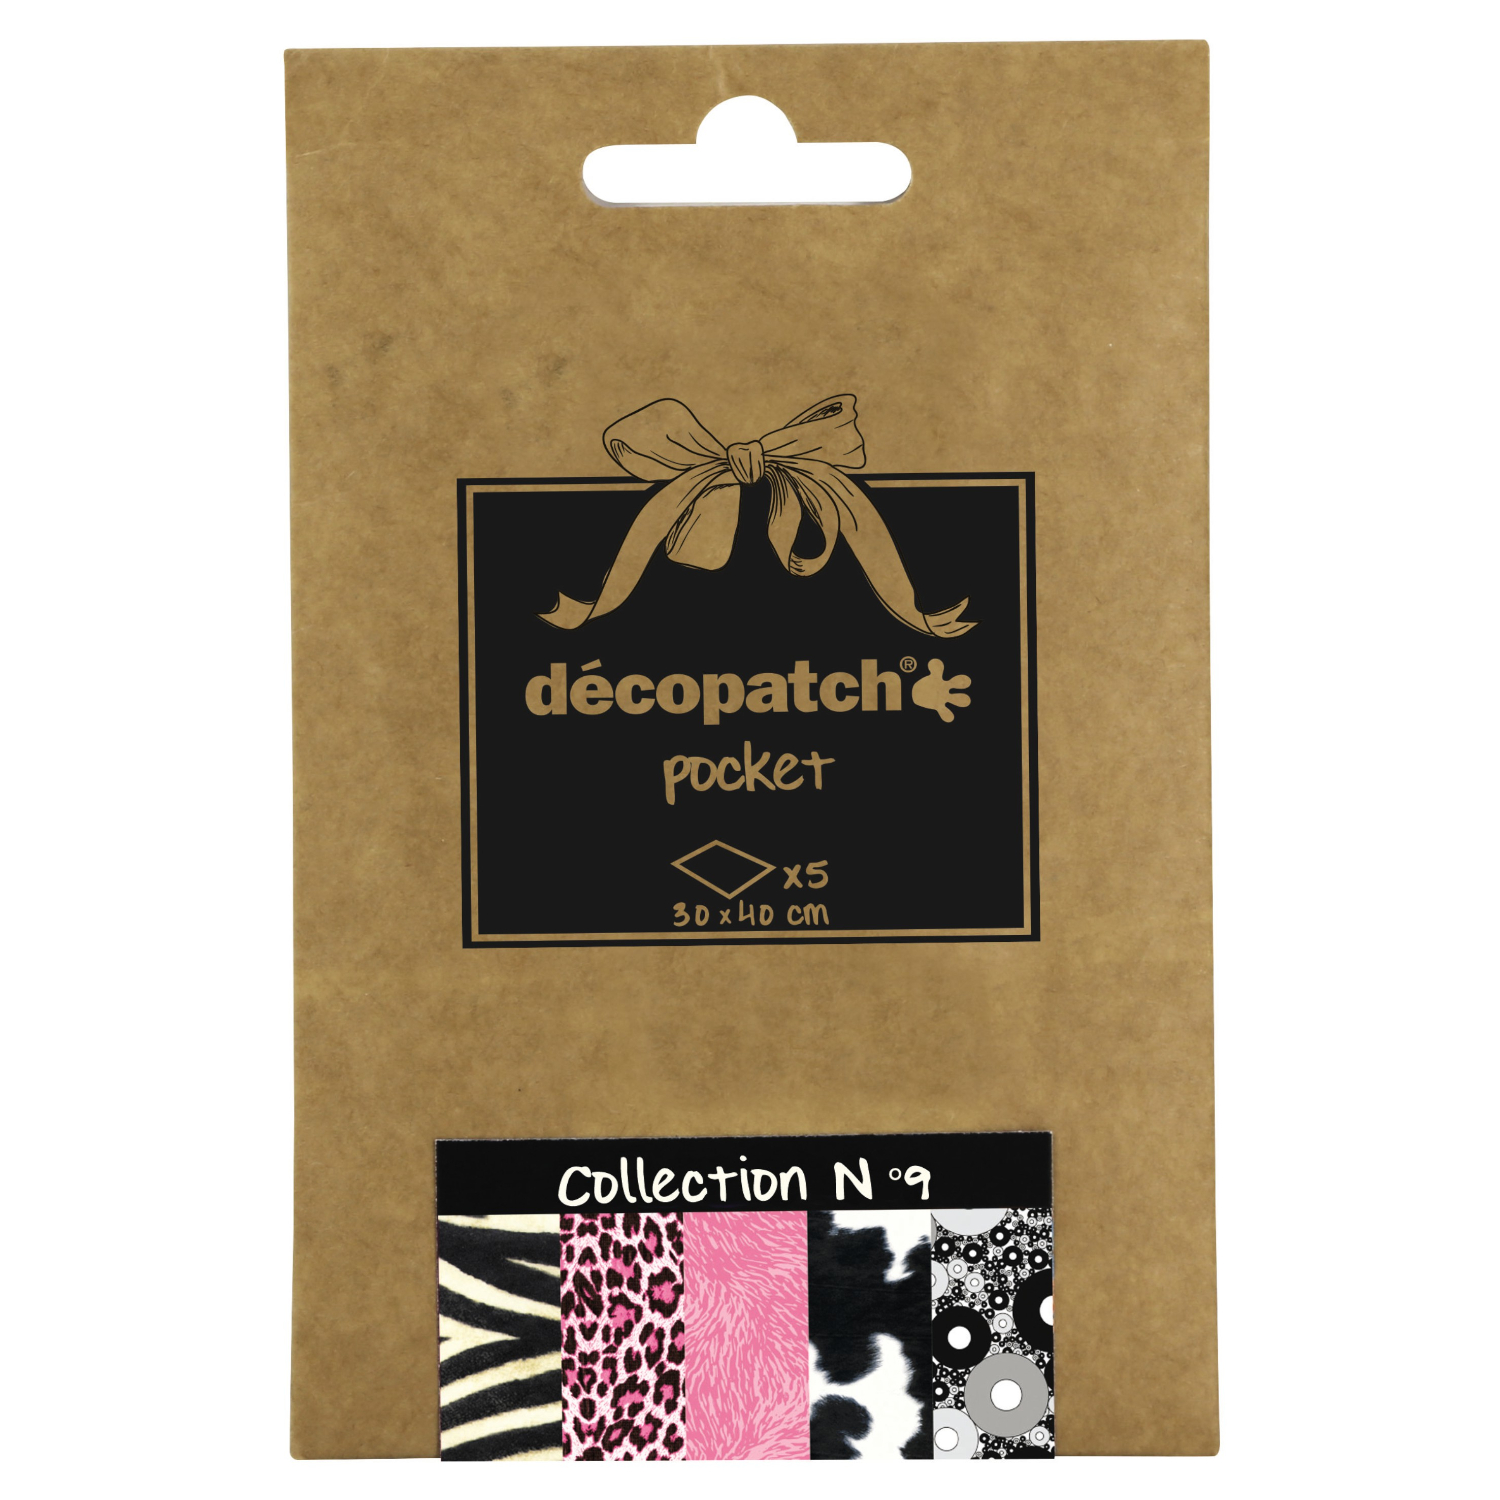 NEU Decoupage- / Decopatch-Papier Pocket-Sortierung, 5 Bogen 30 x 40 cm, Motive: 429, 527, 667, 369, 299